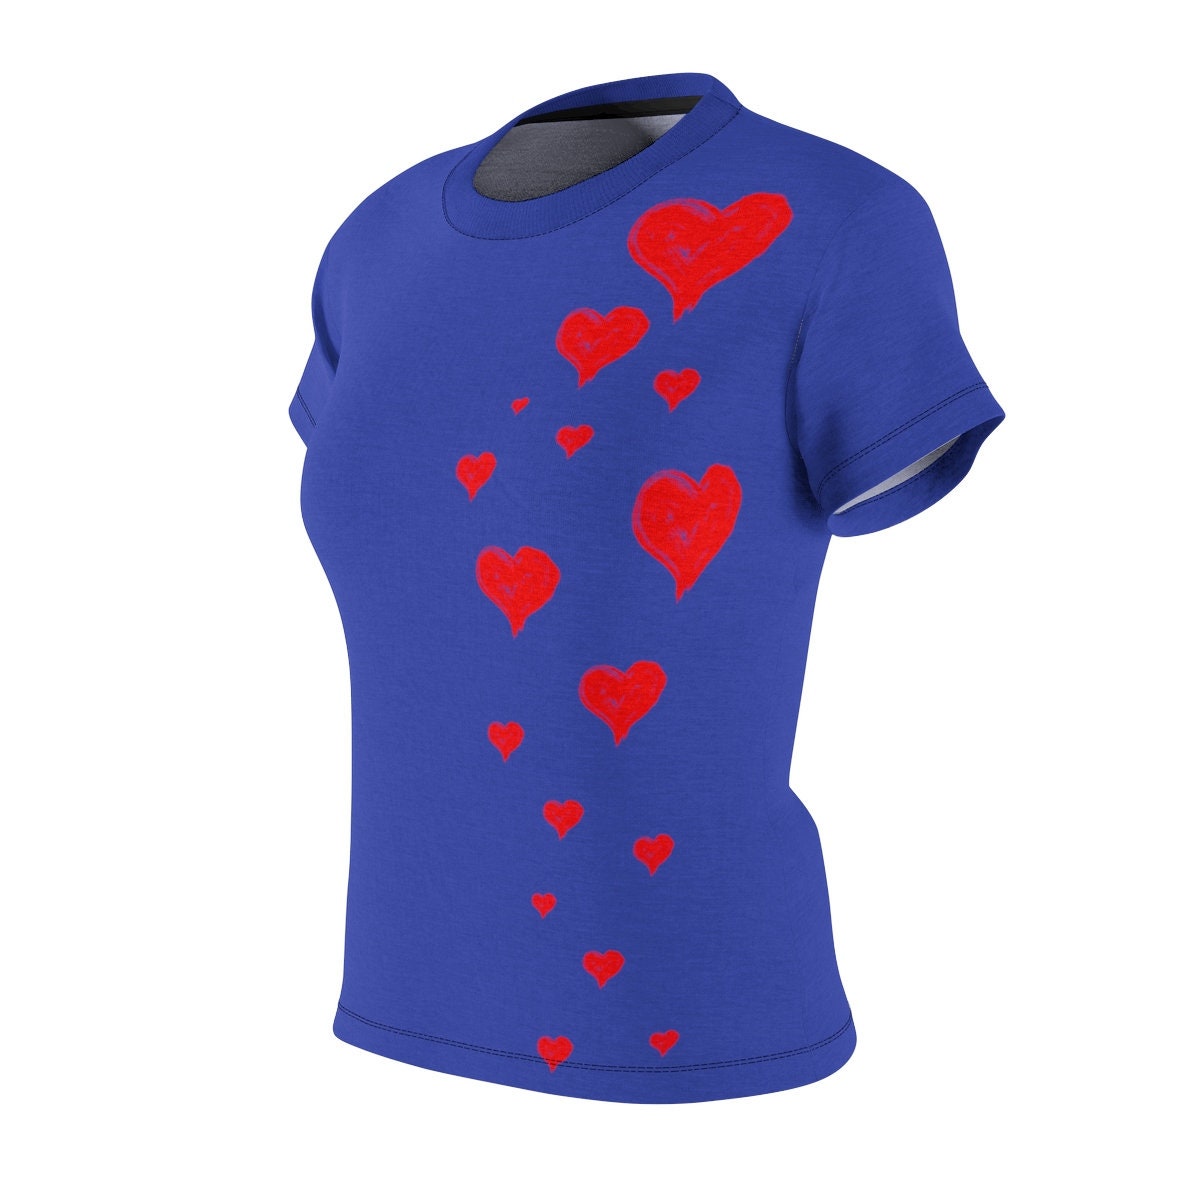 Gift for Girlfriend / Hearts / Women's / Tee T-Shirt Shirt / Love / Gift for Wife / Valentine's gift / Pretty / Classic / Art / New / Sexy - Chloe Lambertin